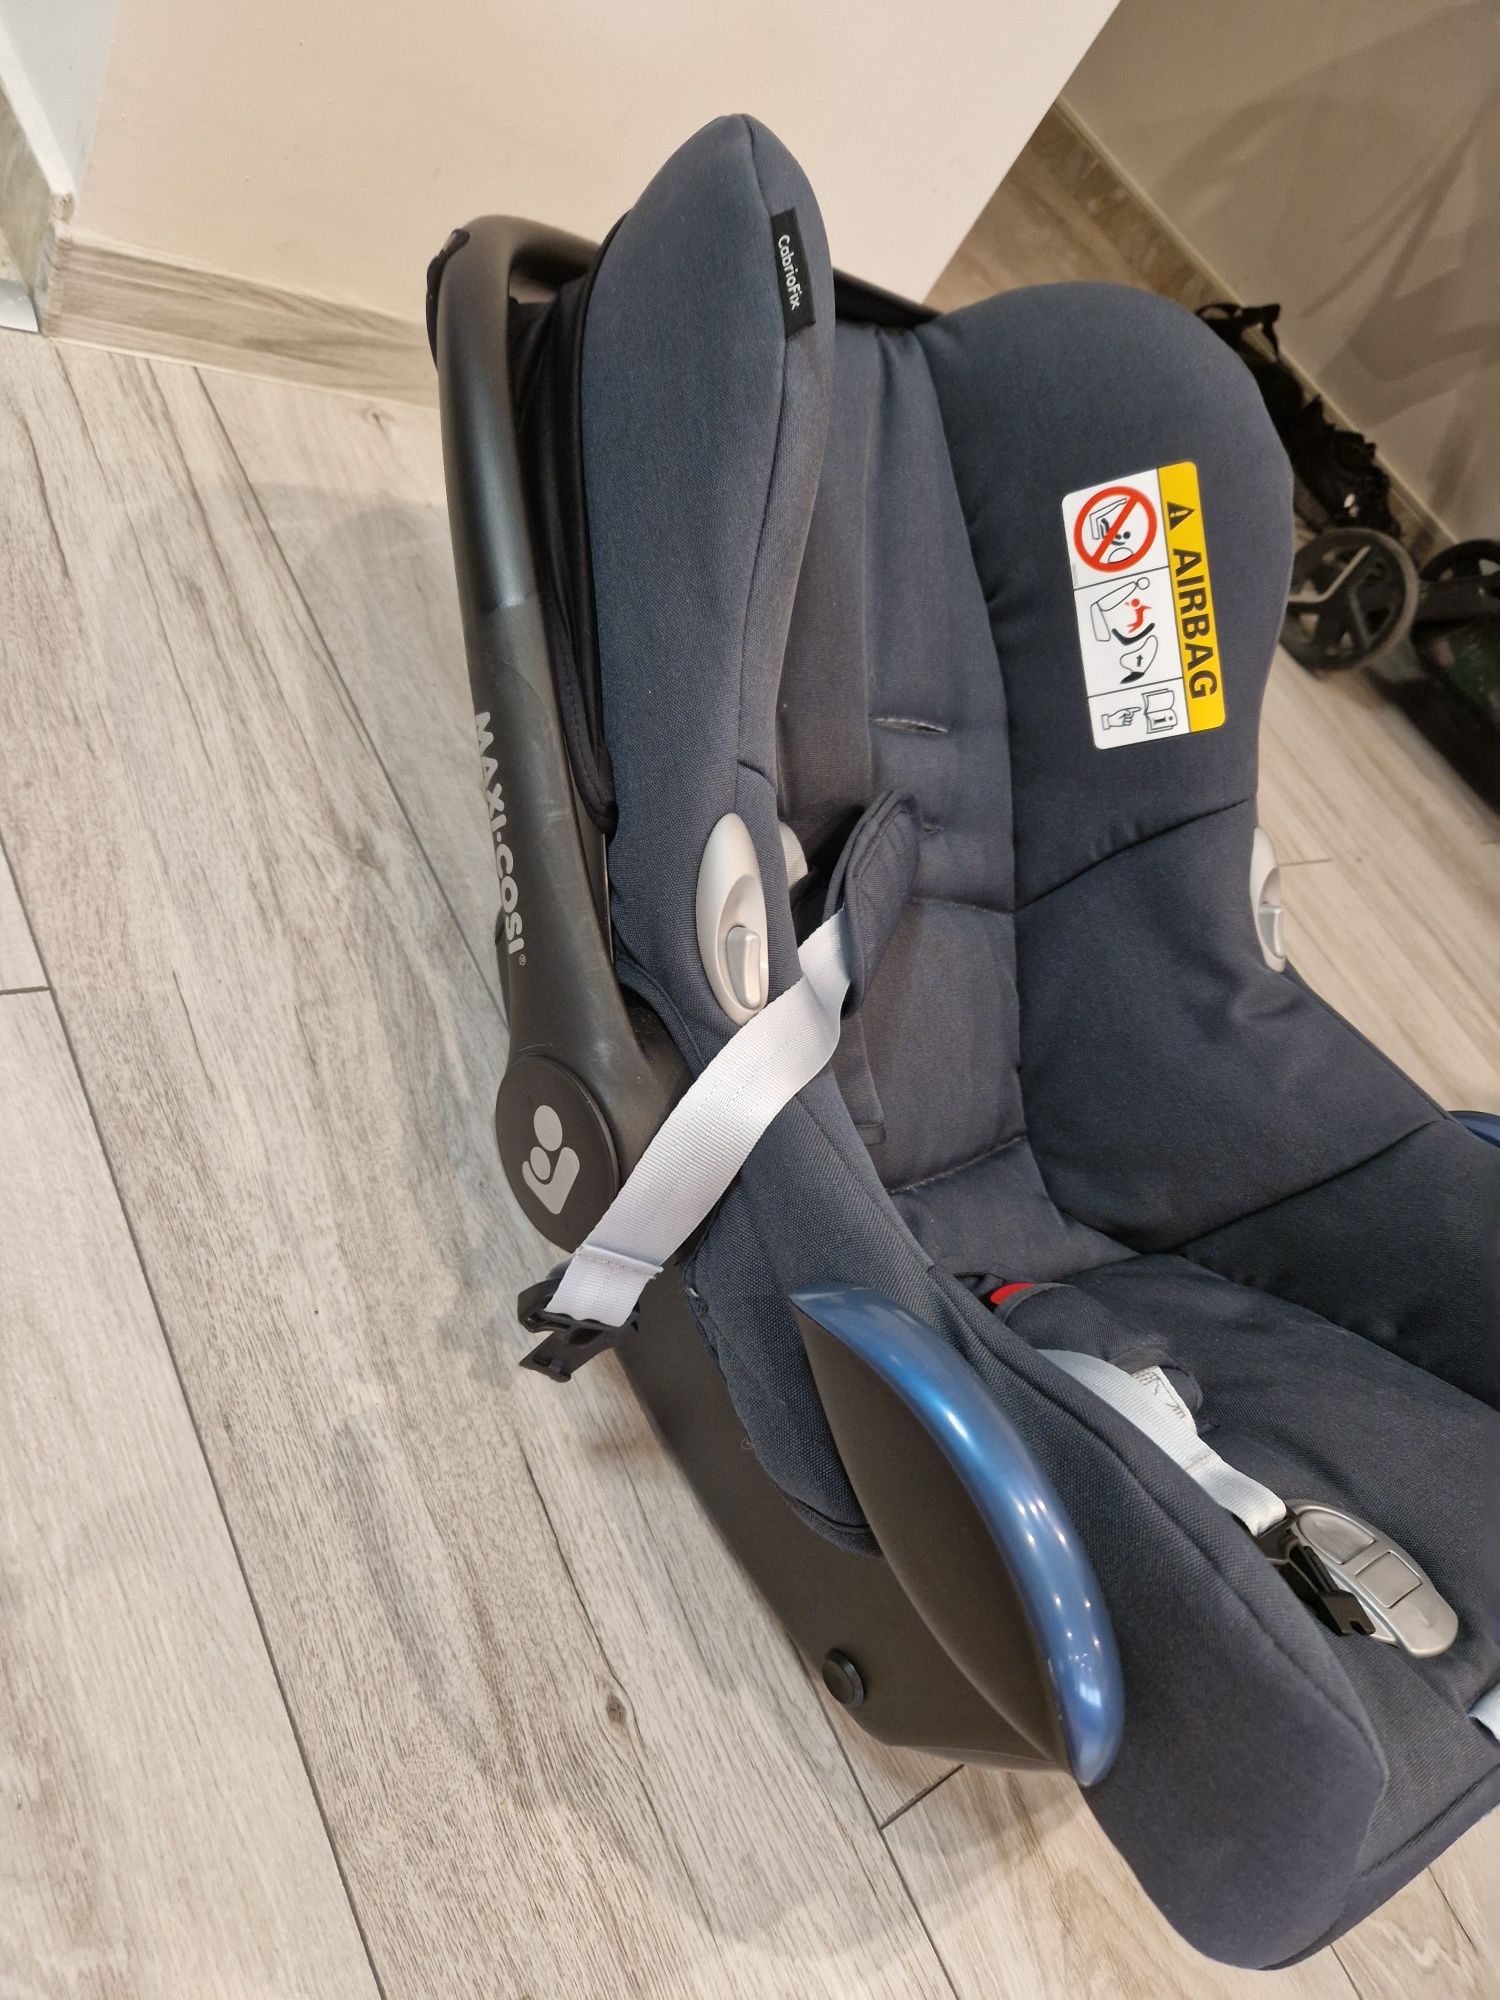 Maxi Cosi бебешко столче за кола  CabrioFix 0-13кг.